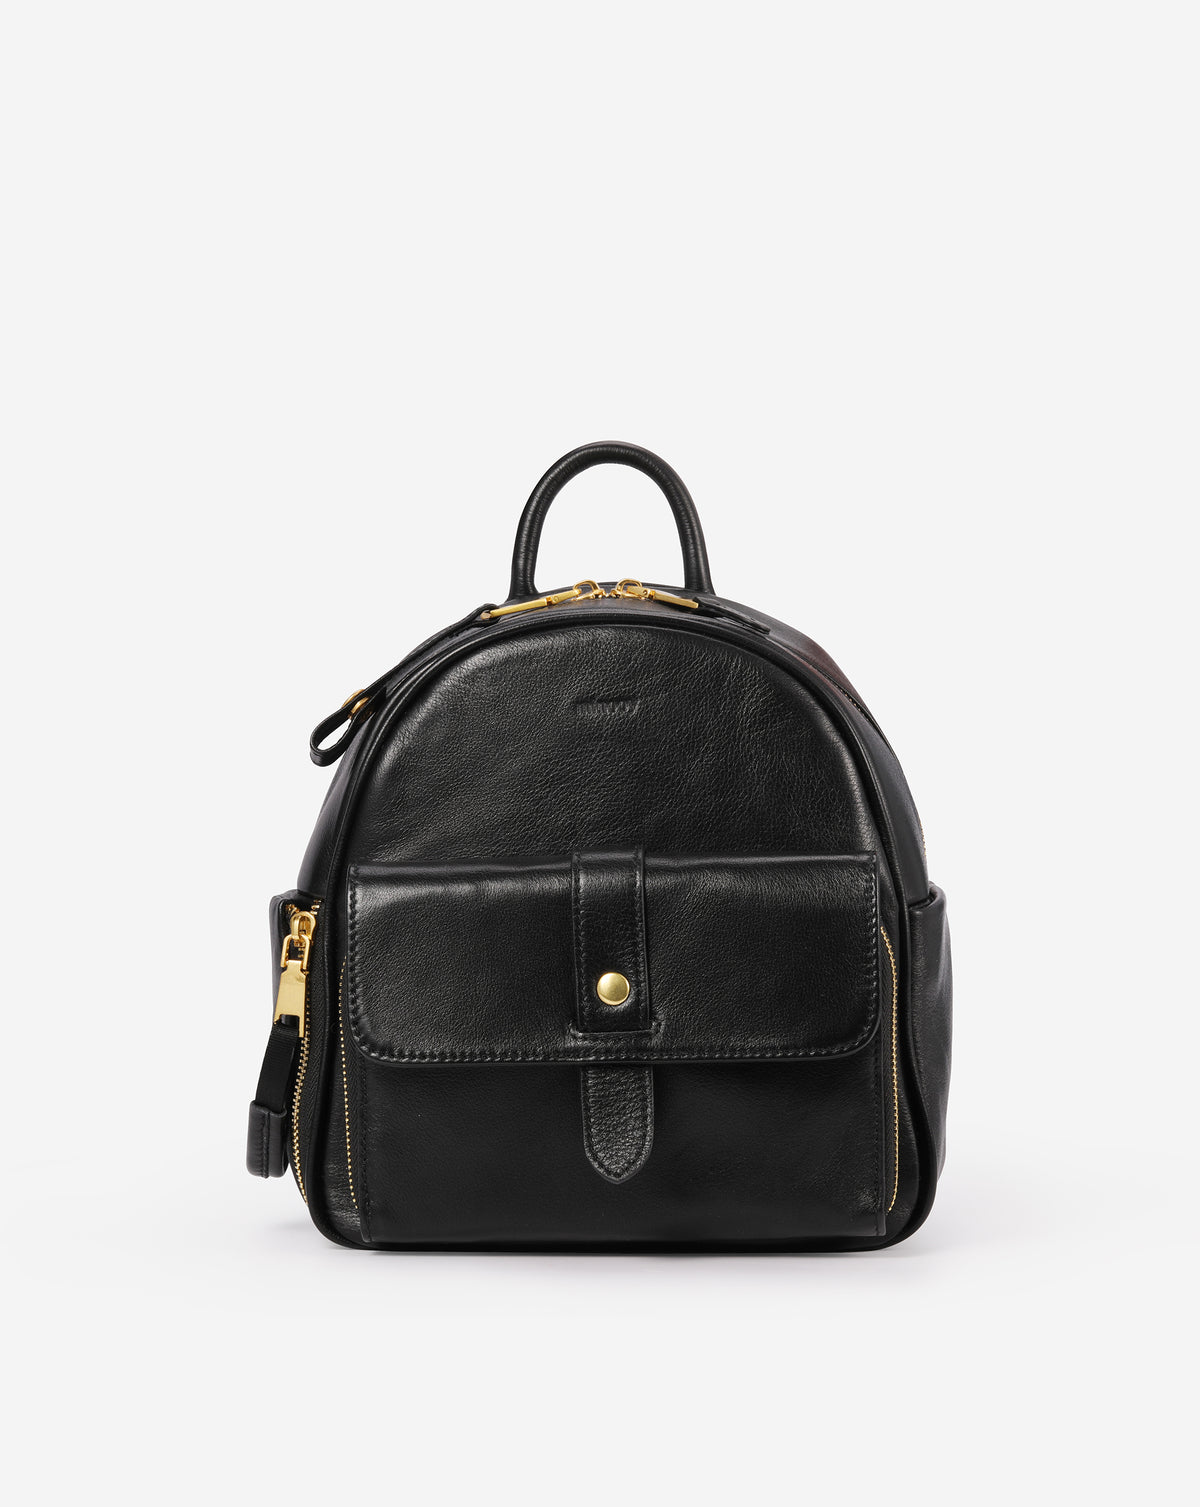 Clotho Backpack/Shoulder Bag.